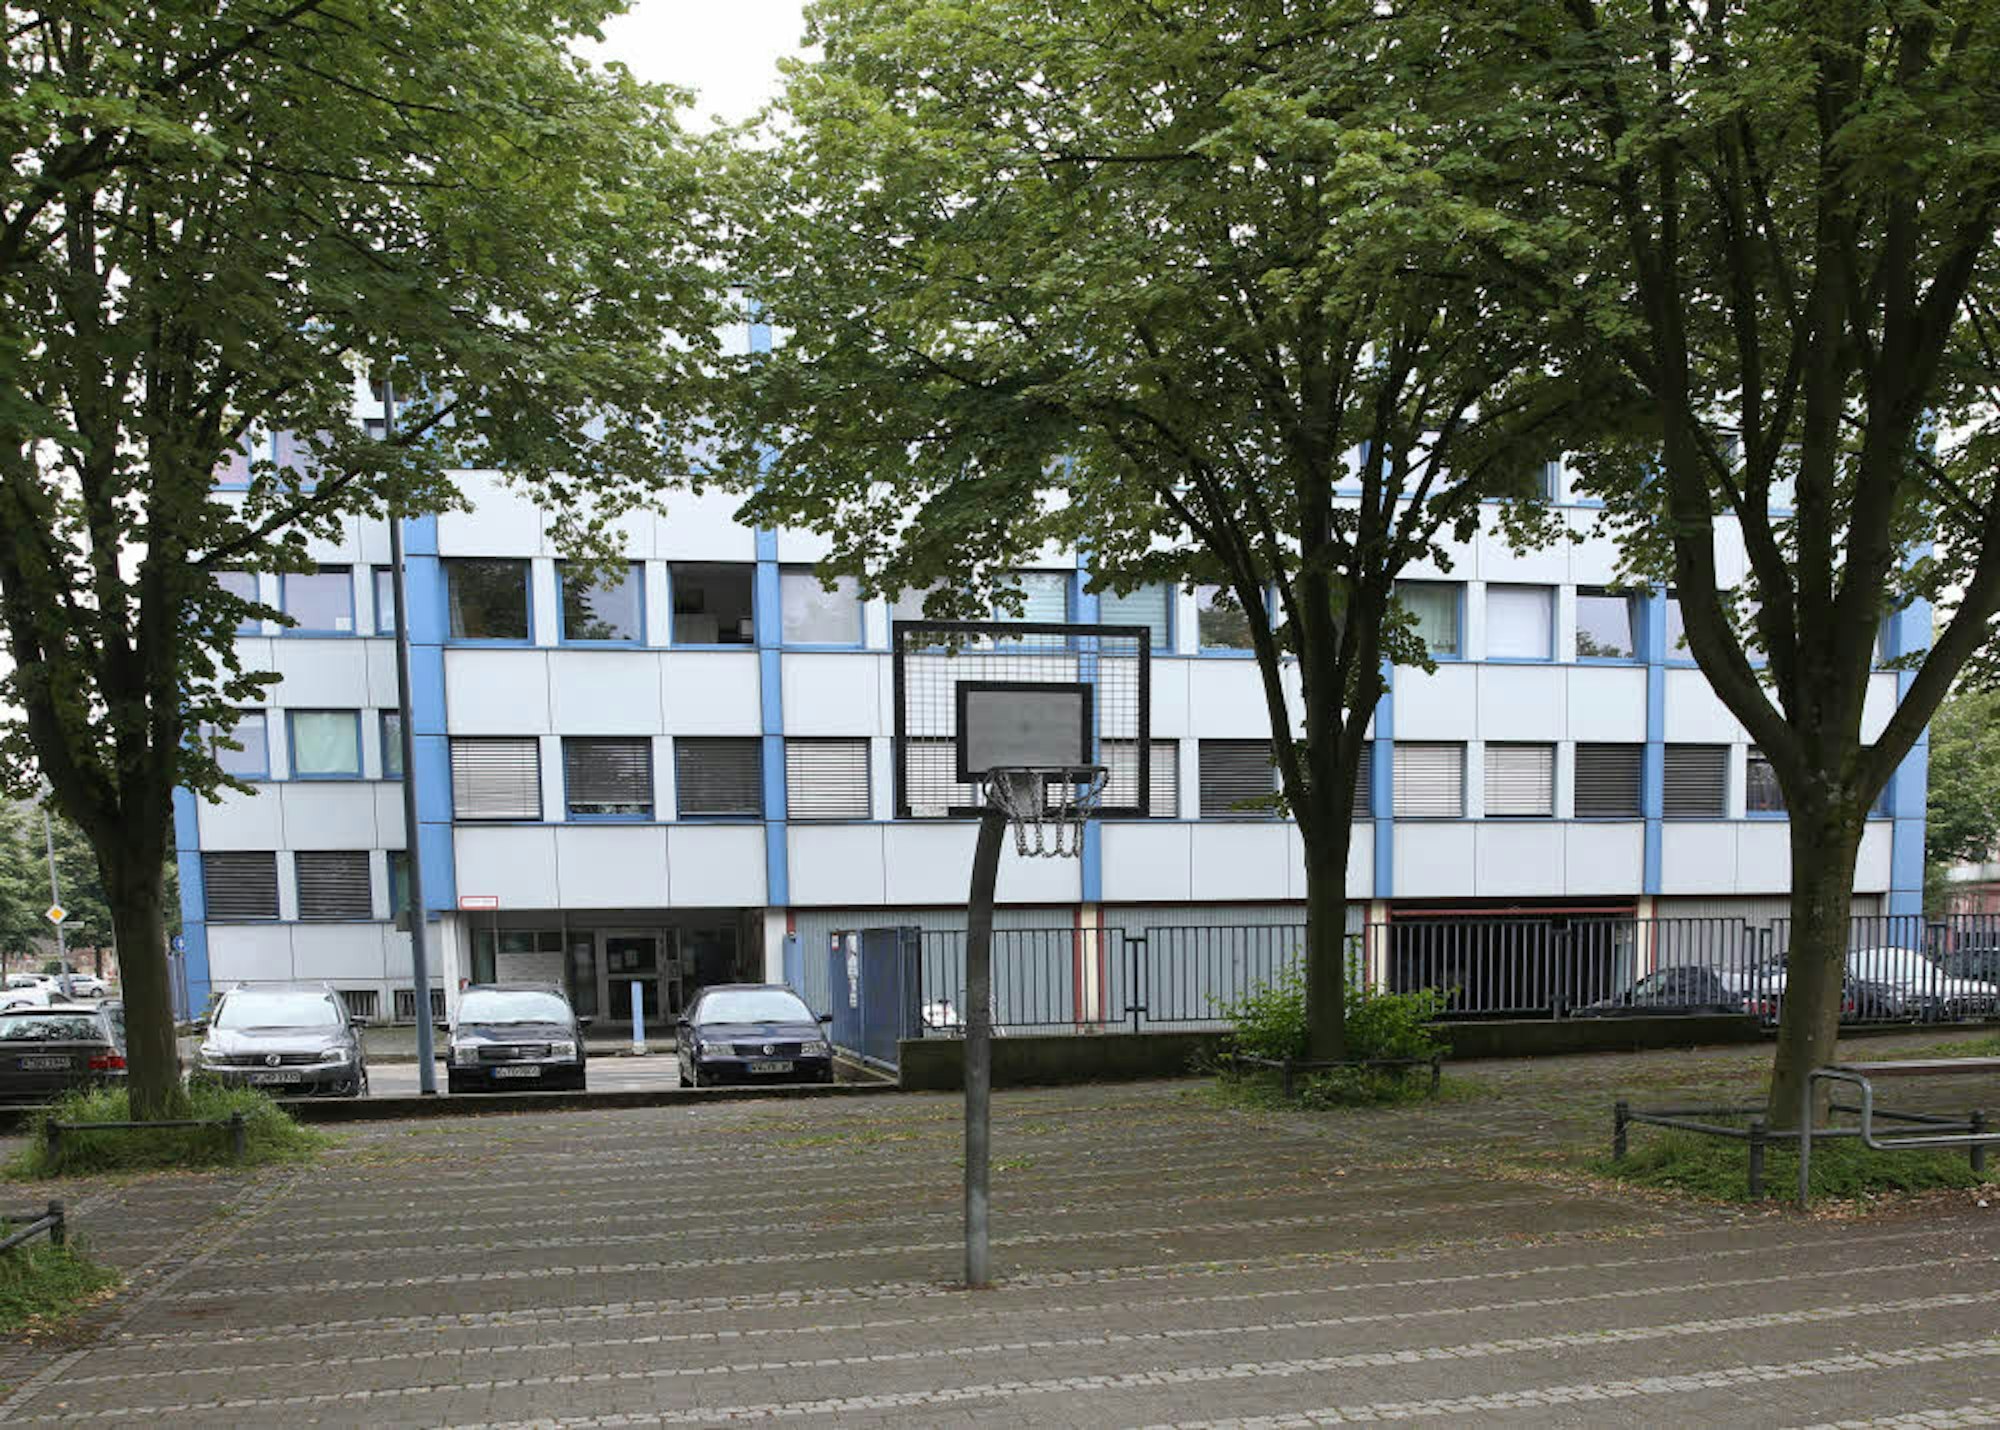 Die Fassade der ehemaligen Kalker Polizeiwache wurde beim Umbau zum Studentenwohnheim kaum verändert.